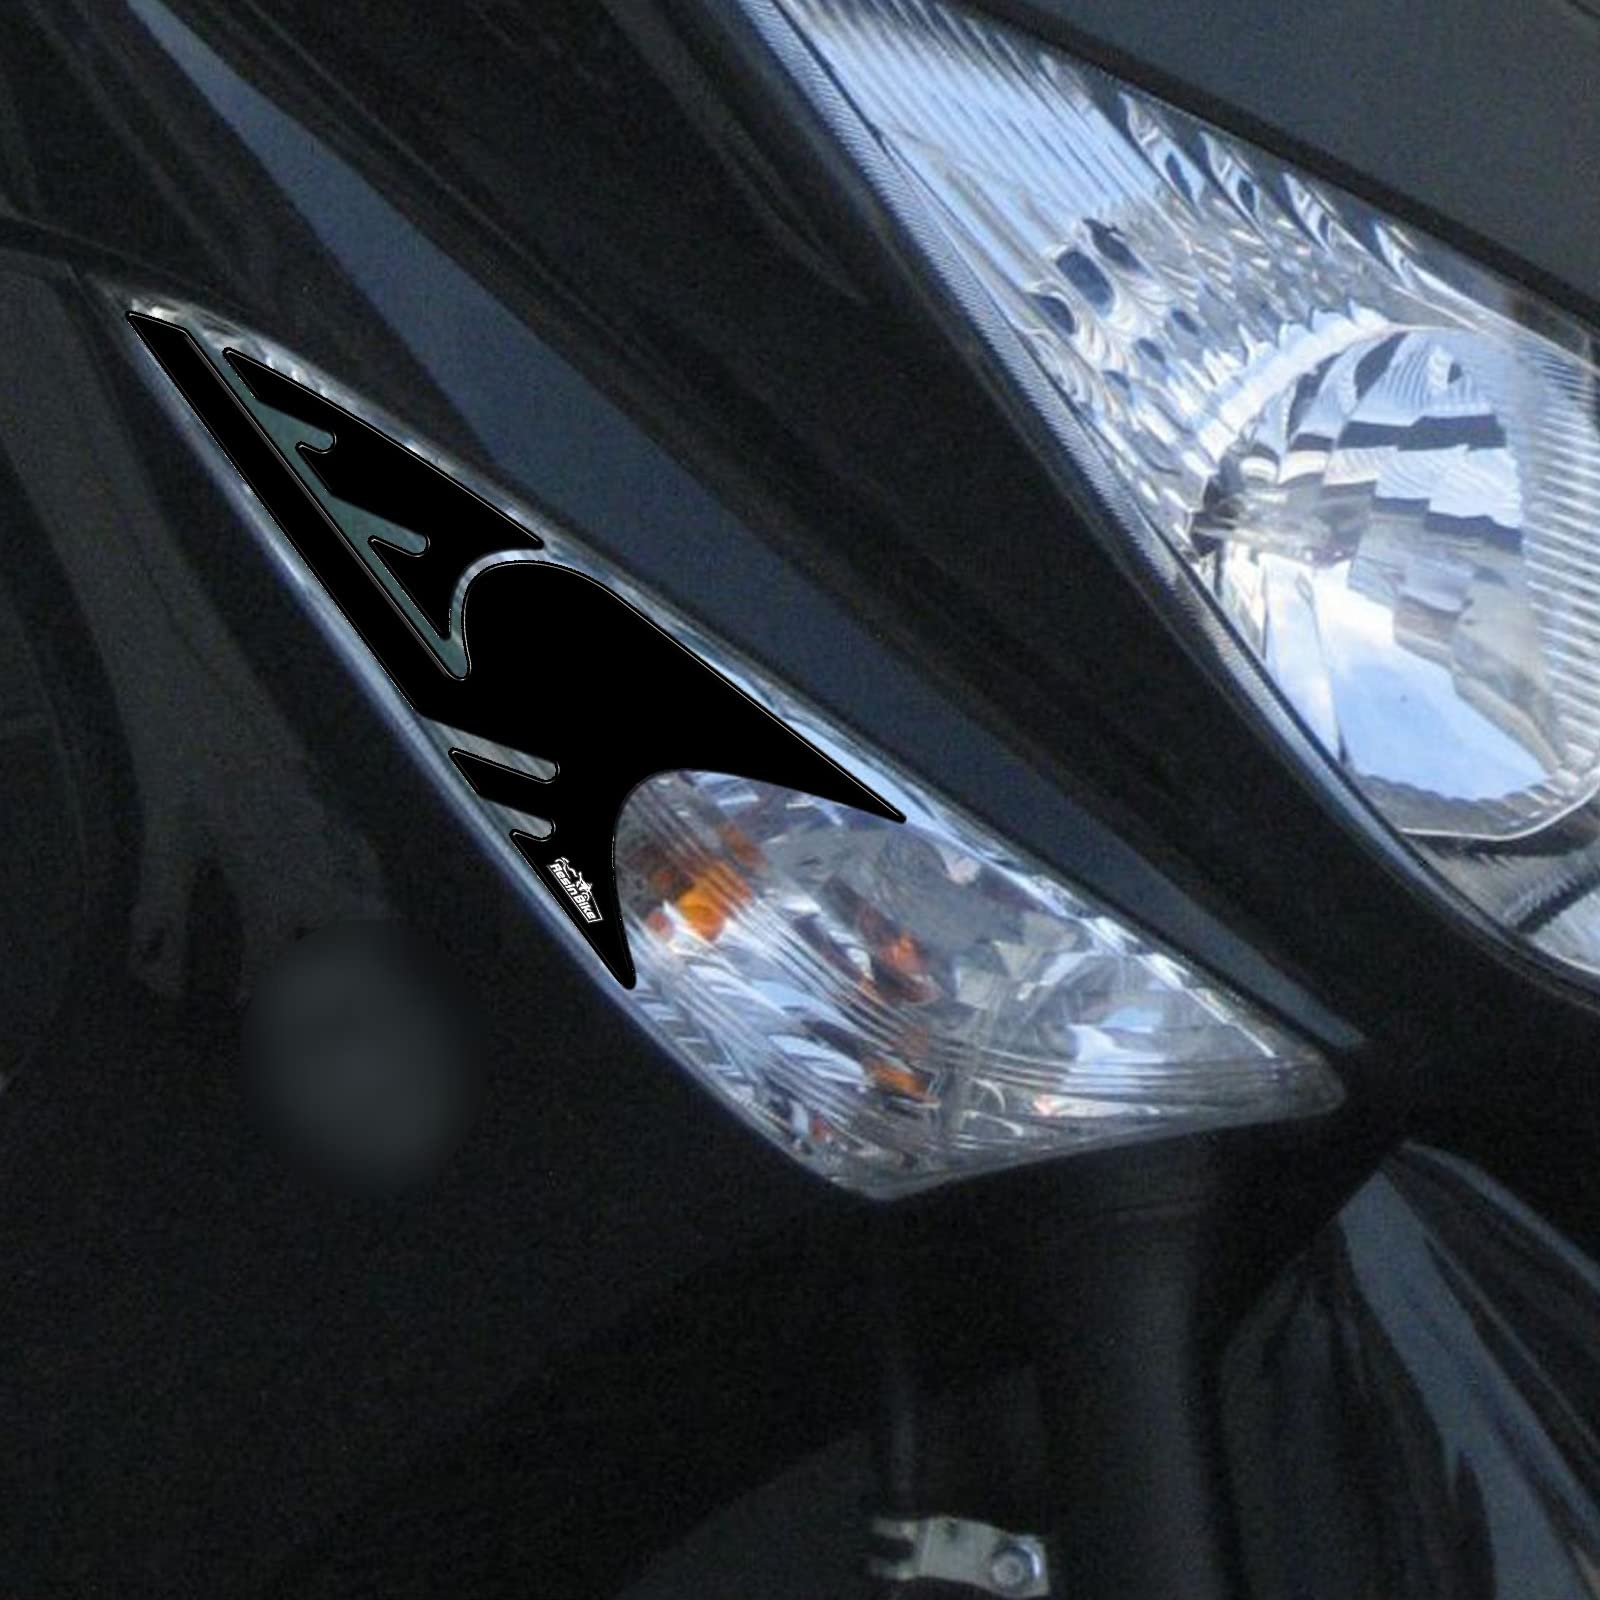 Resin Bike Aufkleber für Motorrad Kompatibel mit Yamaha Tmax 500 2008-2011. Schutz für die Blinkerlinsen vor Stößen und Kratzern. Paar 3D-Harzklebstoff - Stickers - Made in Italy von Resin Bike